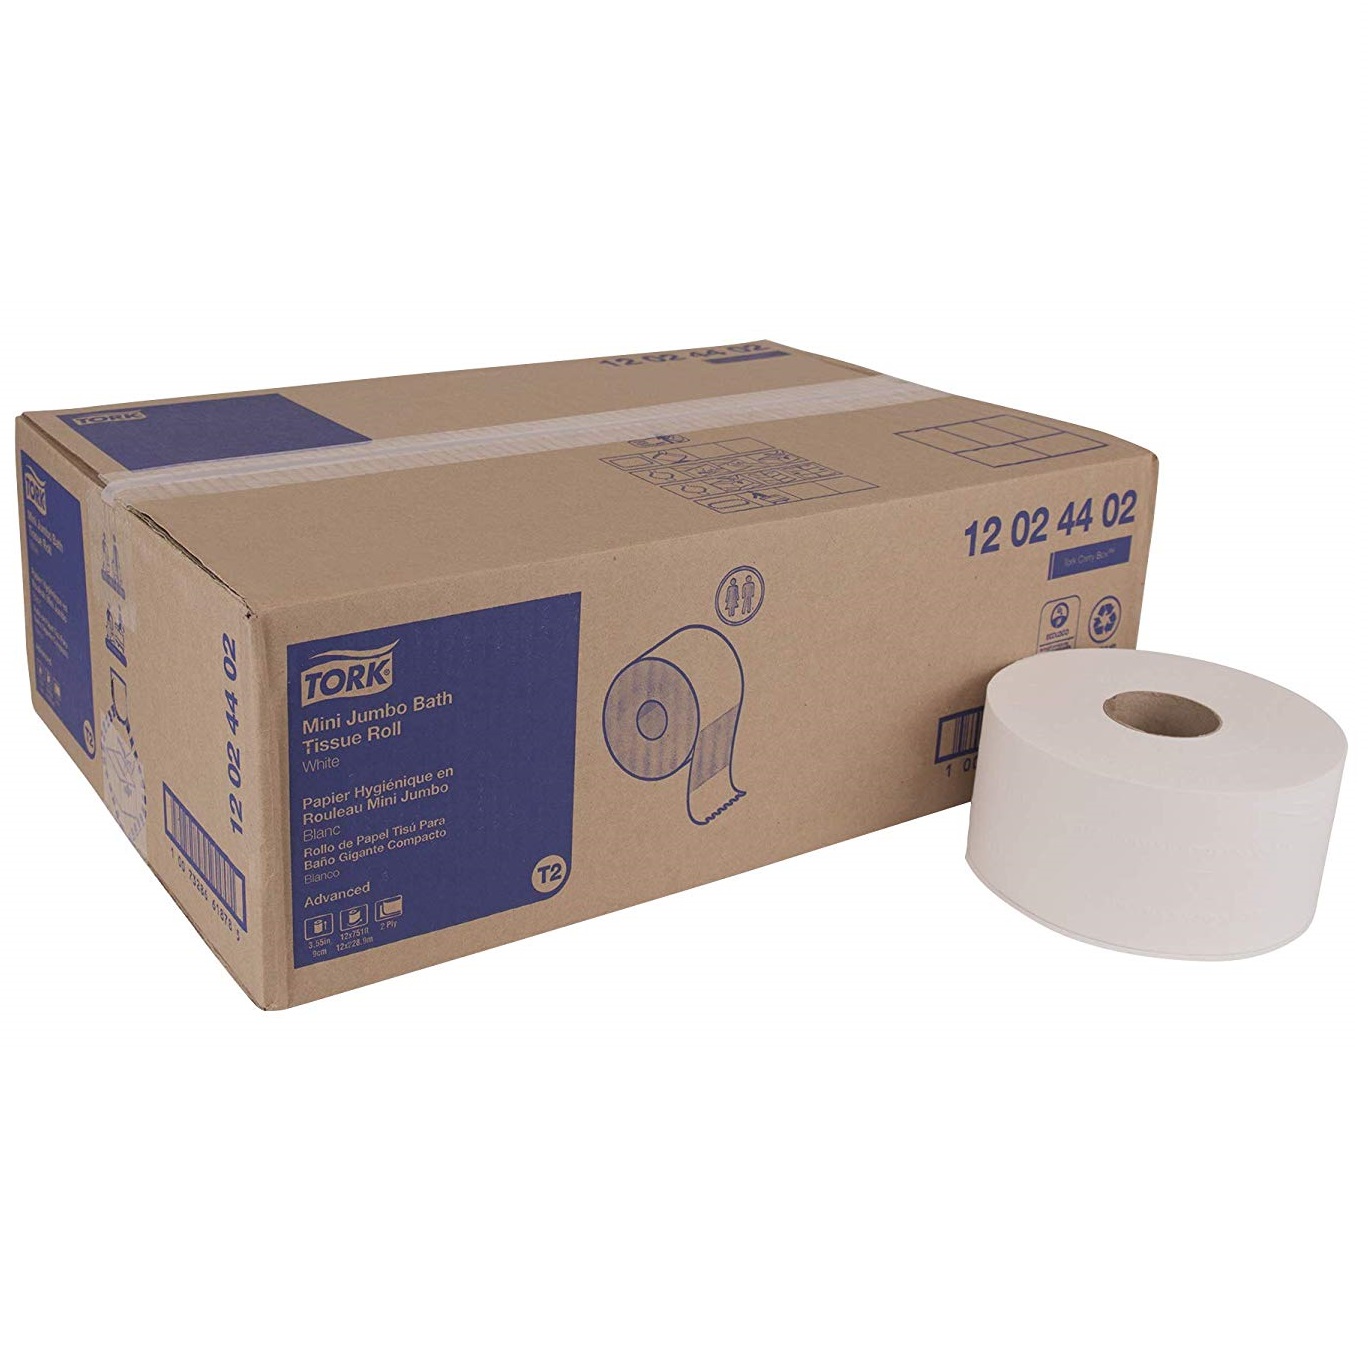 [12 02 44 02] Tork - Jrt
Toilet Tissue